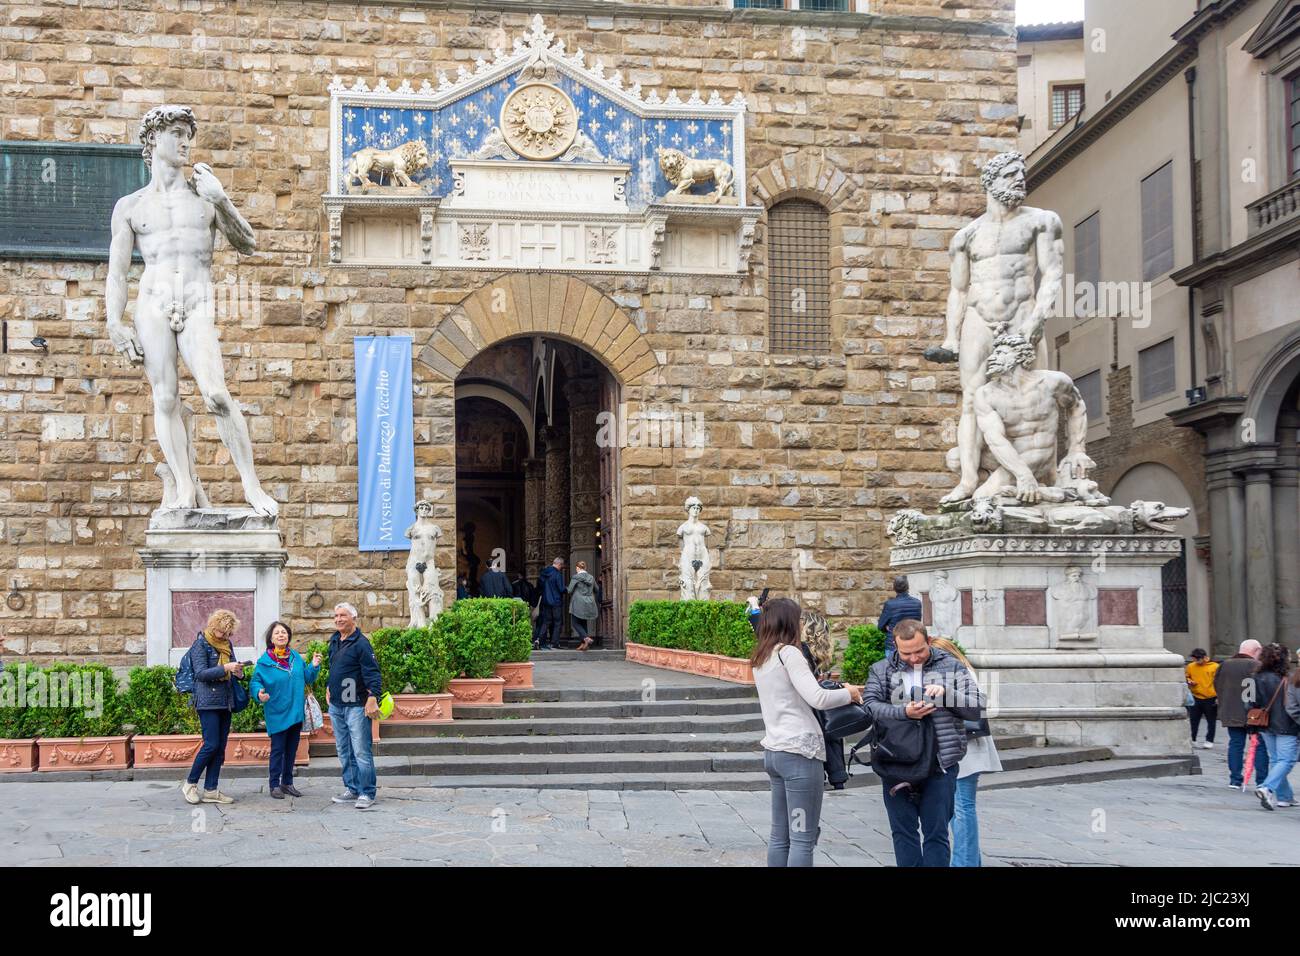 Statue of David at entrance to Palazzo Vecchio, Piazza della Signoria, Florence (Firenze), Tuscany Region, Italy Stock Photo